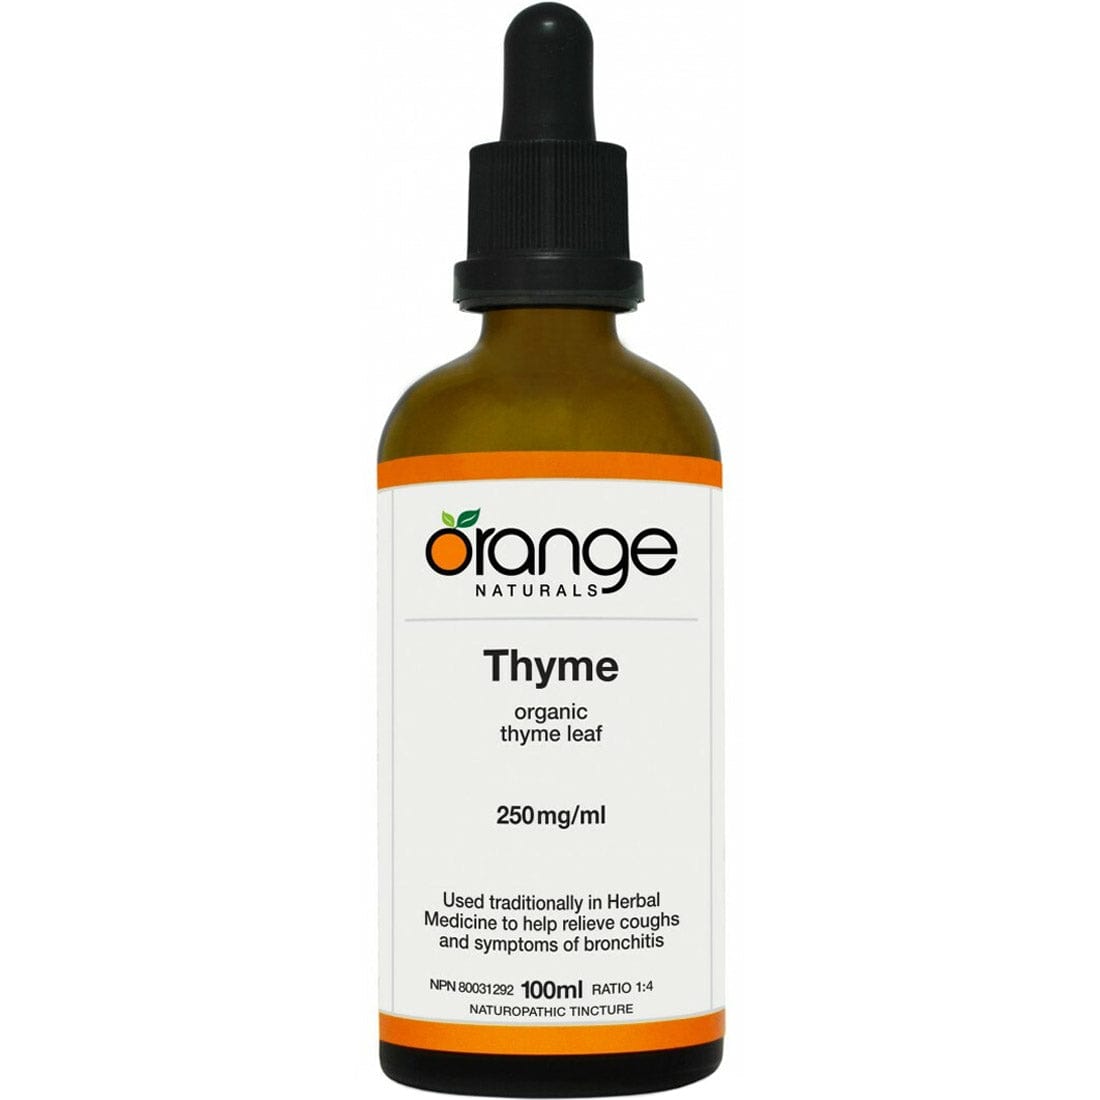 Orange Naturals Thyme Tincture, 100 ml